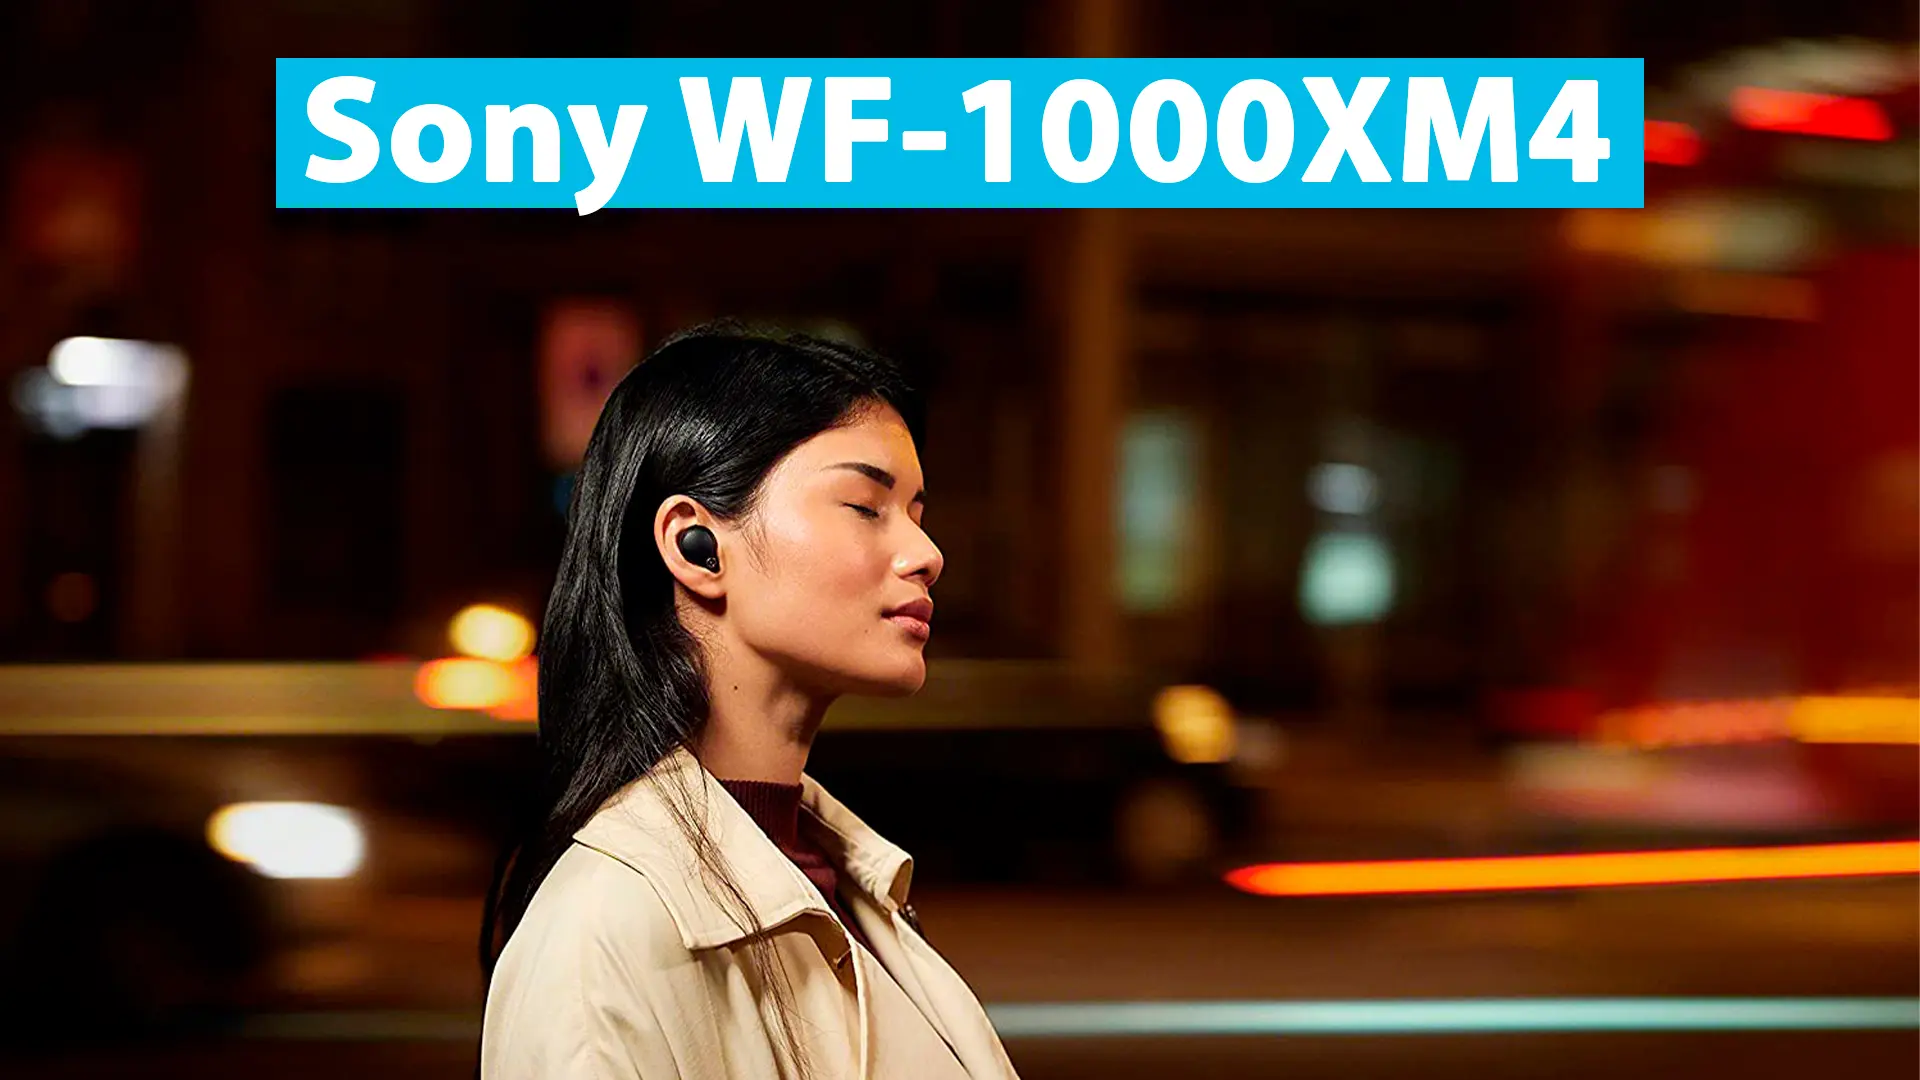 Sony WF-1000XM4: Análisis, comparativa y guía de compra de auriculares inalámbricos premium